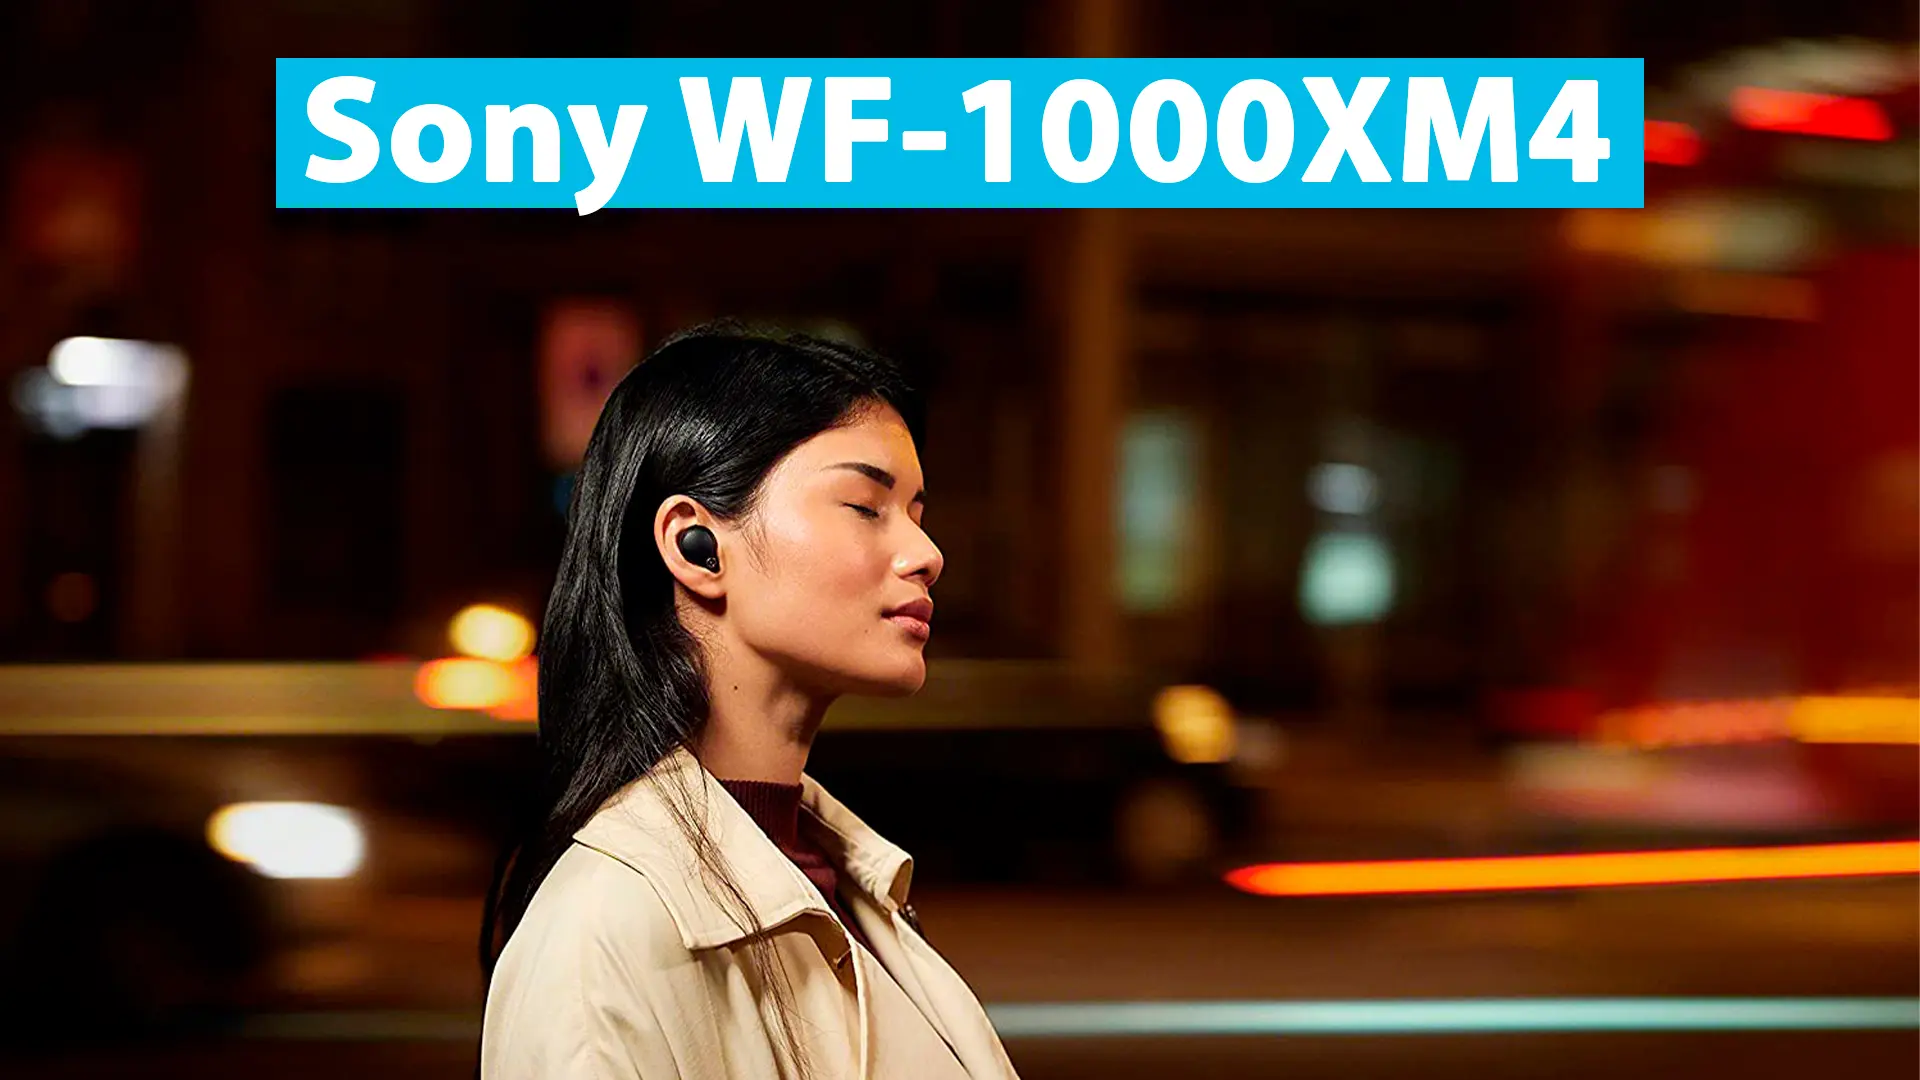 Sony WF-1000XM4: Análisis, comparativa y guía de compra de auriculares inalámbricos premium